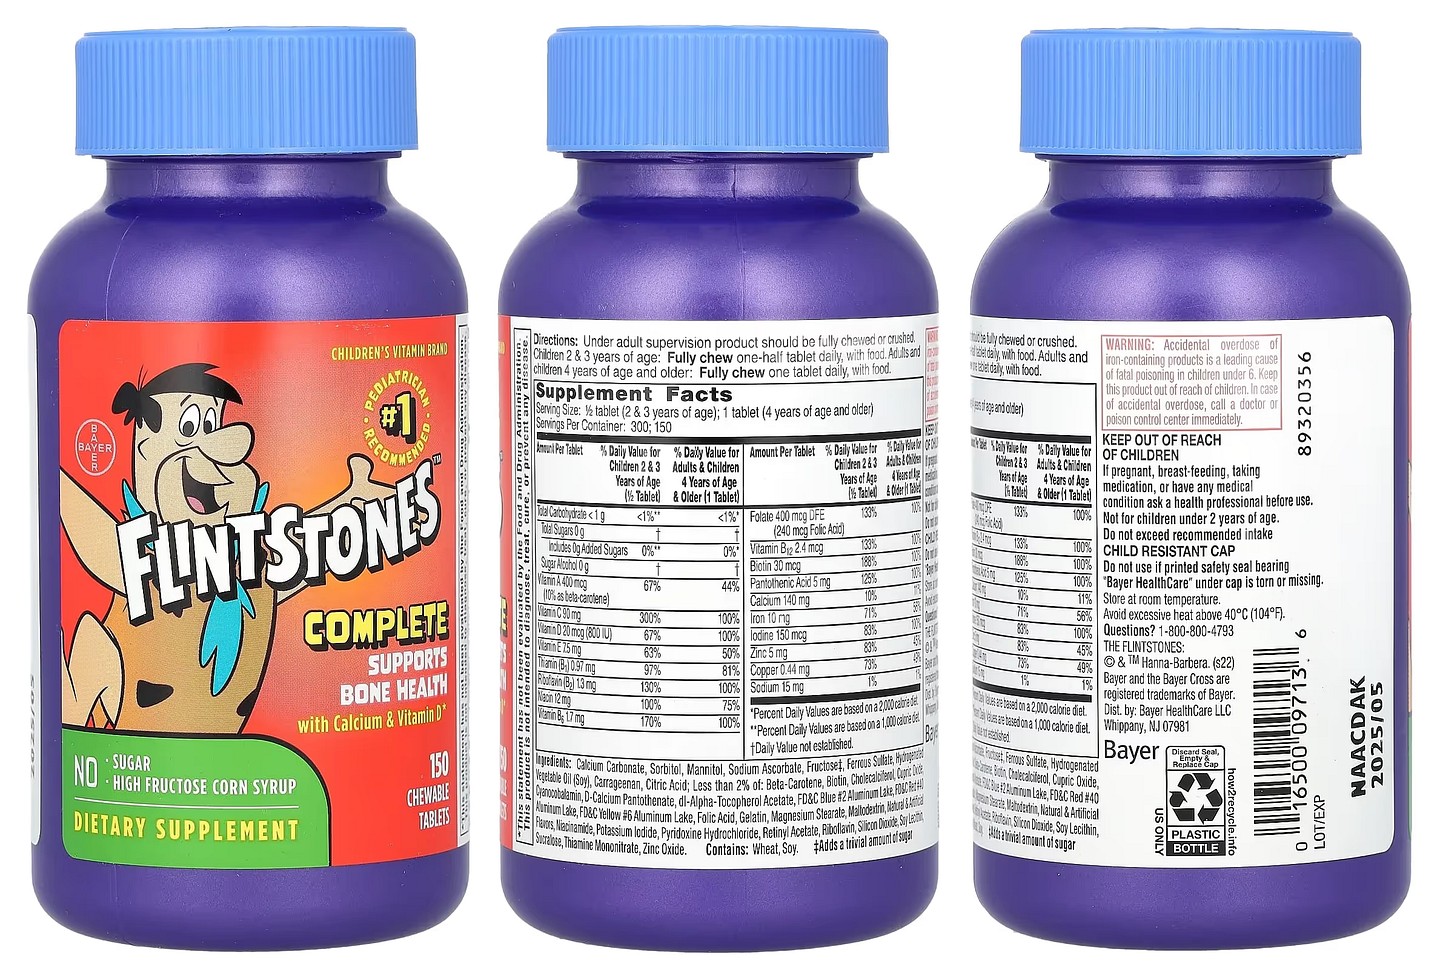 Flintstones, Complete with Calcium & Vitamin D packaging